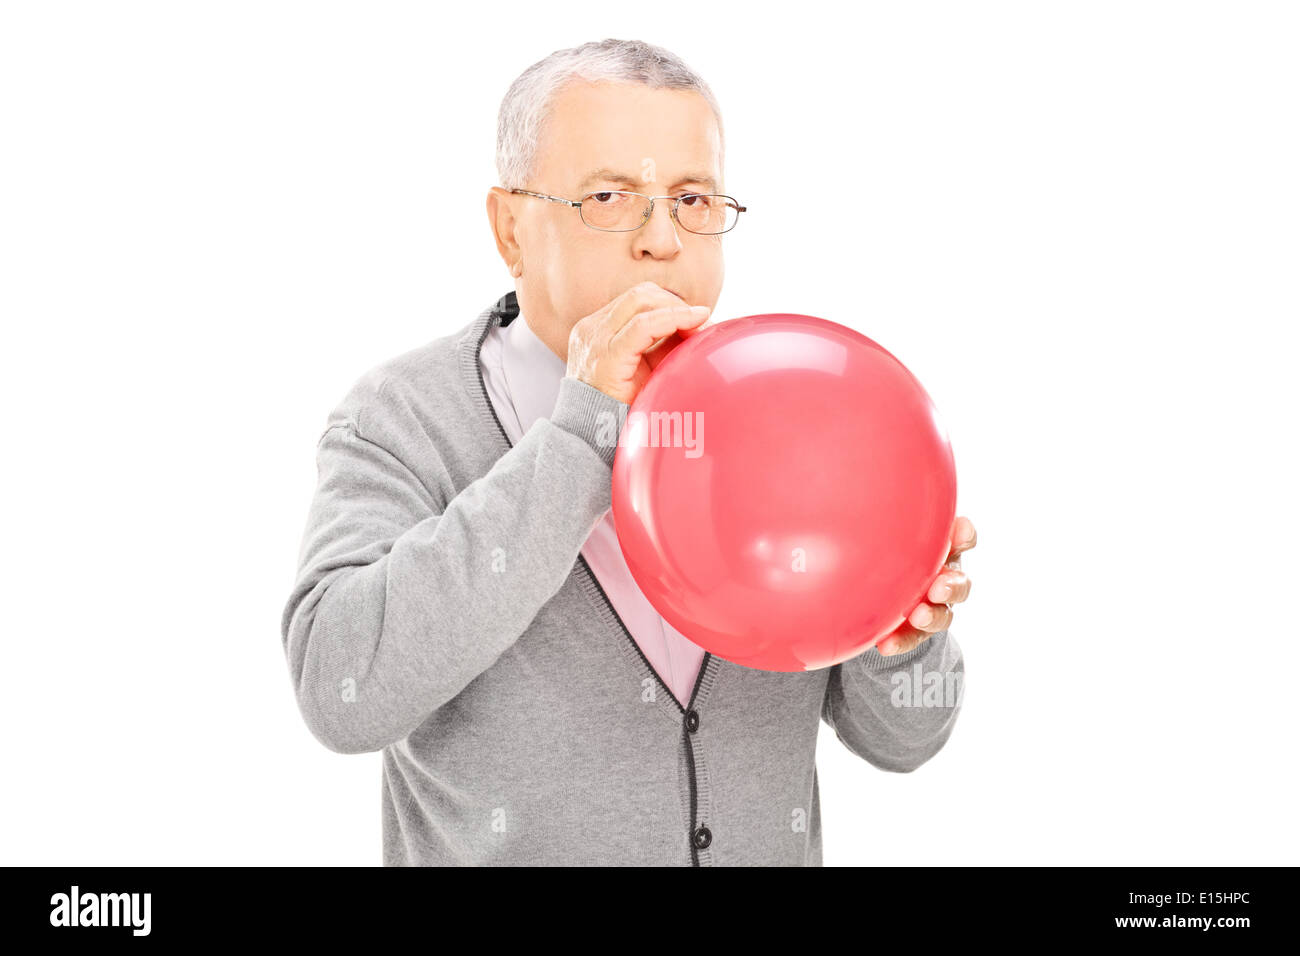 Reifer Mann bläst einen Ballon und Blick in die Kamera Stockfotografie -  Alamy